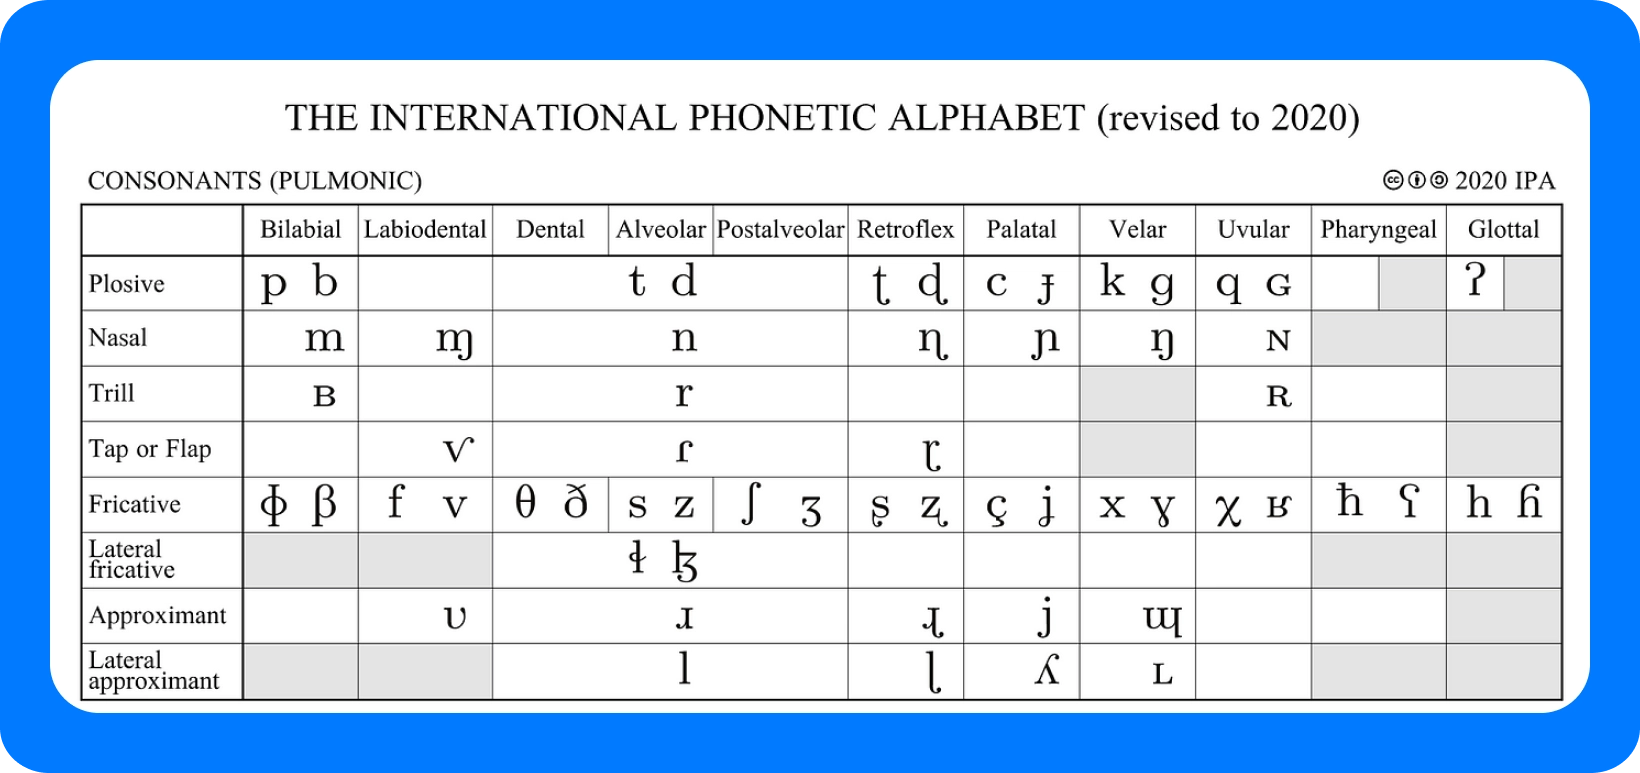 תרשים האלפבית הפונטי הבינלאומי לעיצורים, מתוקן בשנת 2020, המפרט נקודות ביטוי.